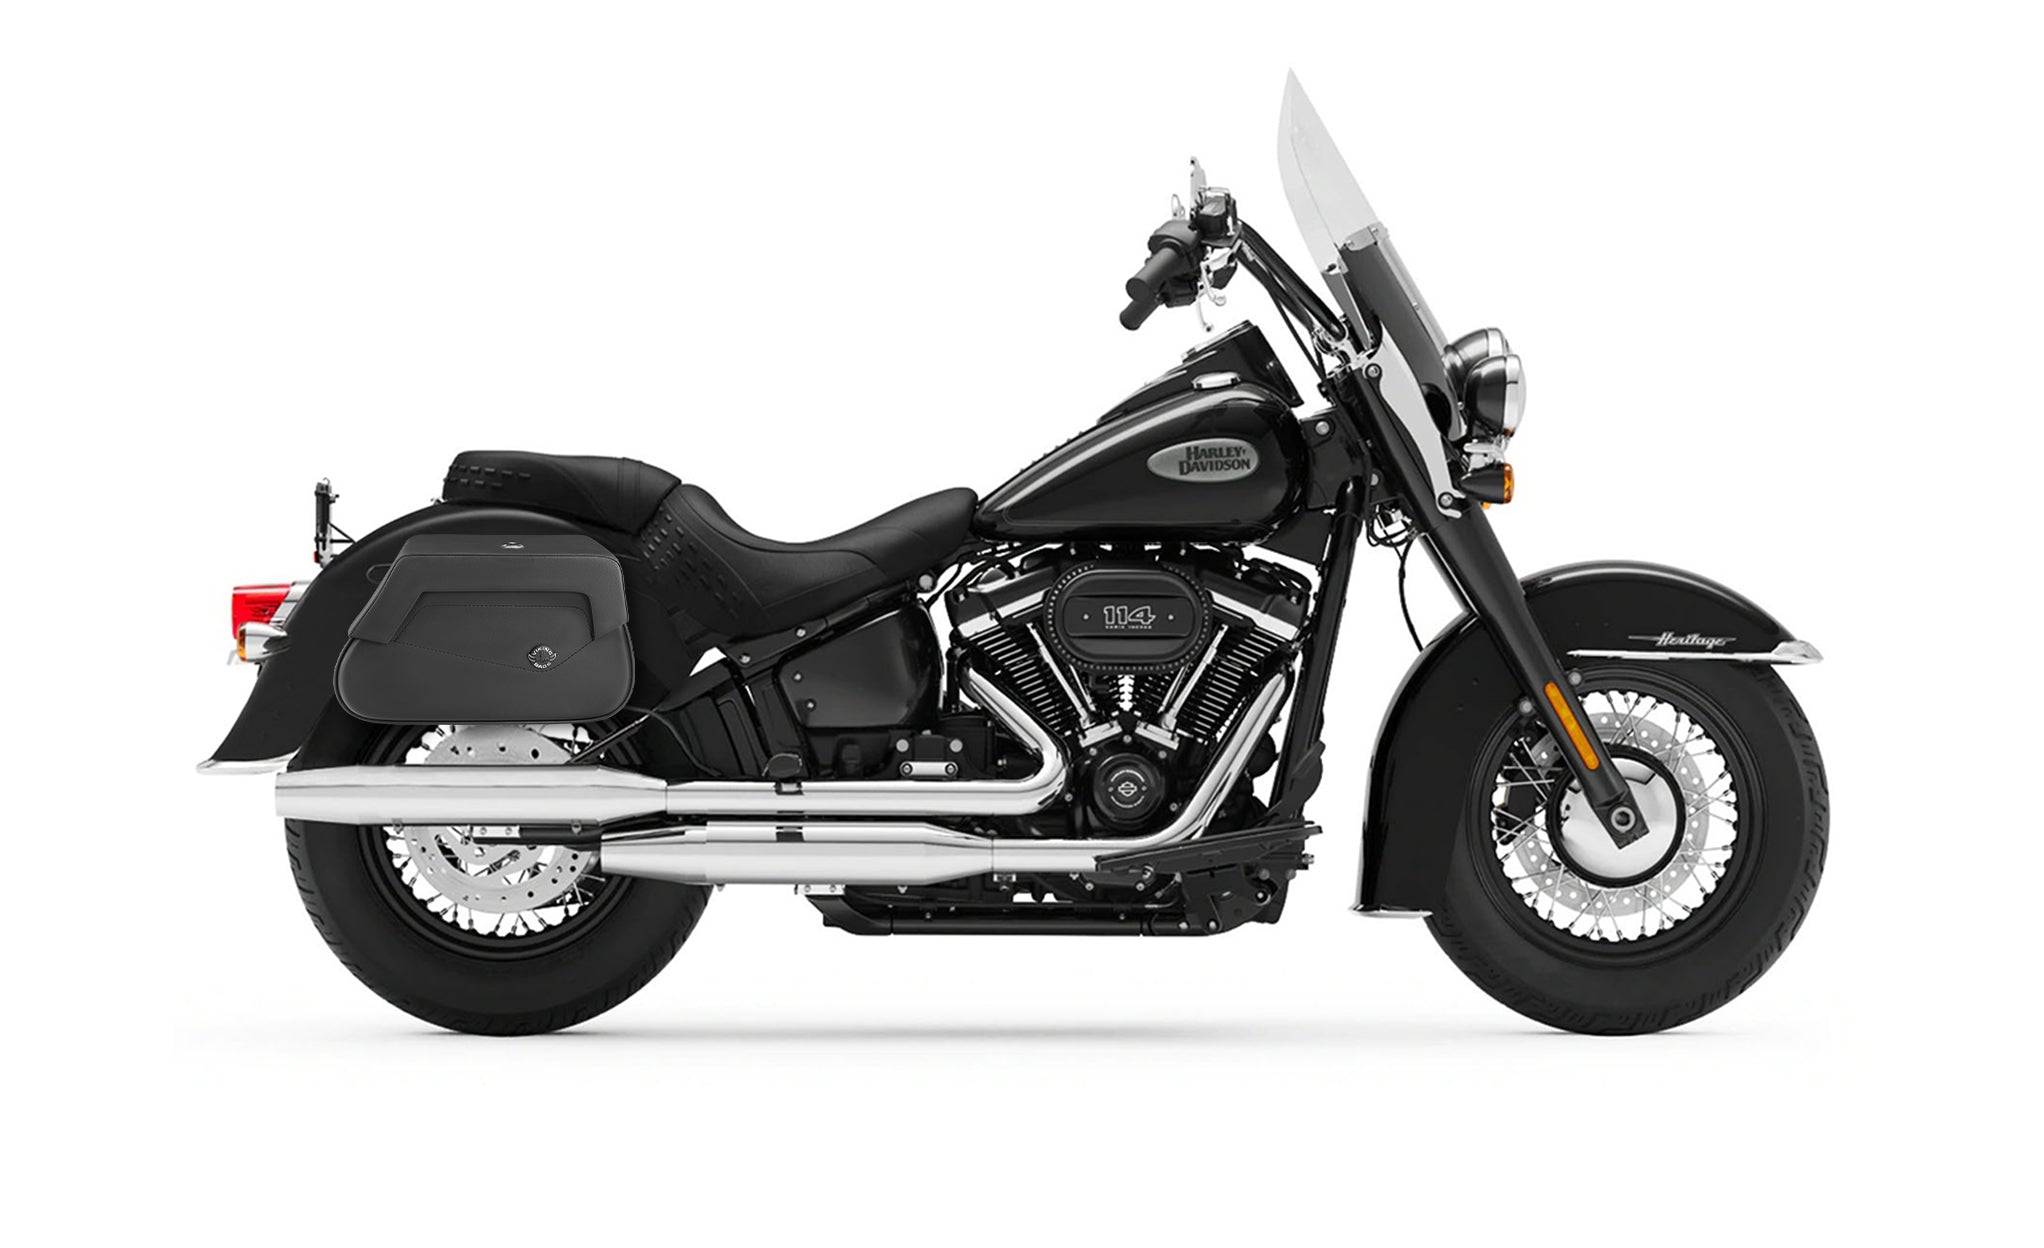 Viking Loki Plain Small Leather Motorcycle Saddlebags For Harley Softail Heritage Flst I C Ci on Bike Photo @expand